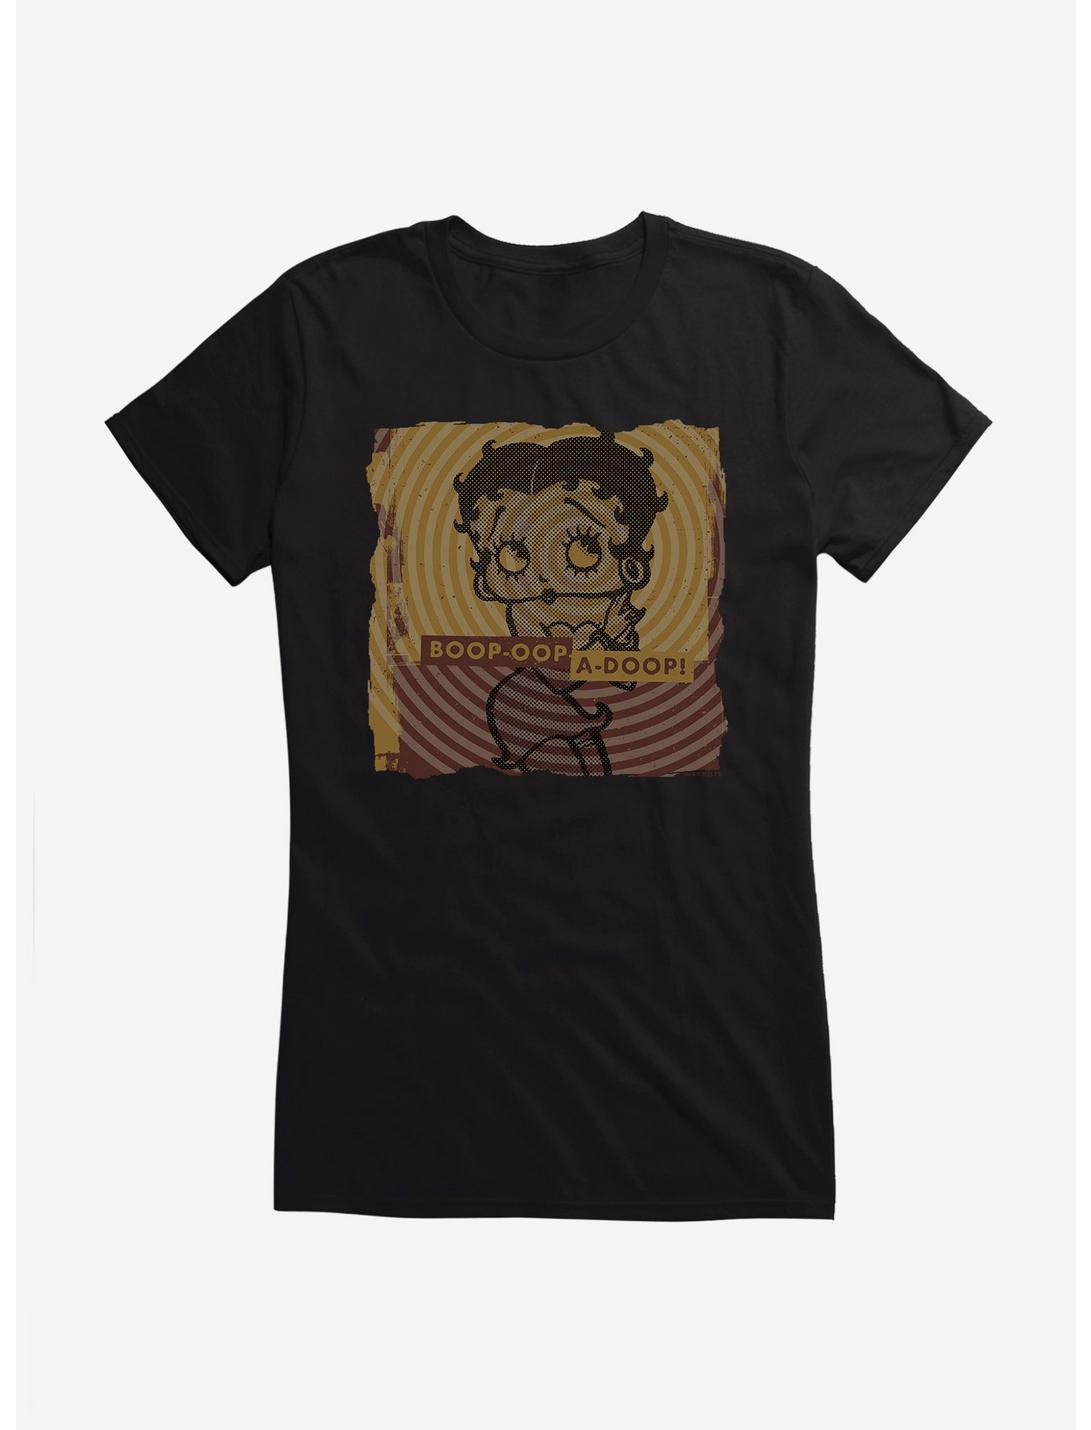 Betty Boop Oop A Doop Girls T-Shirt, , hi-res